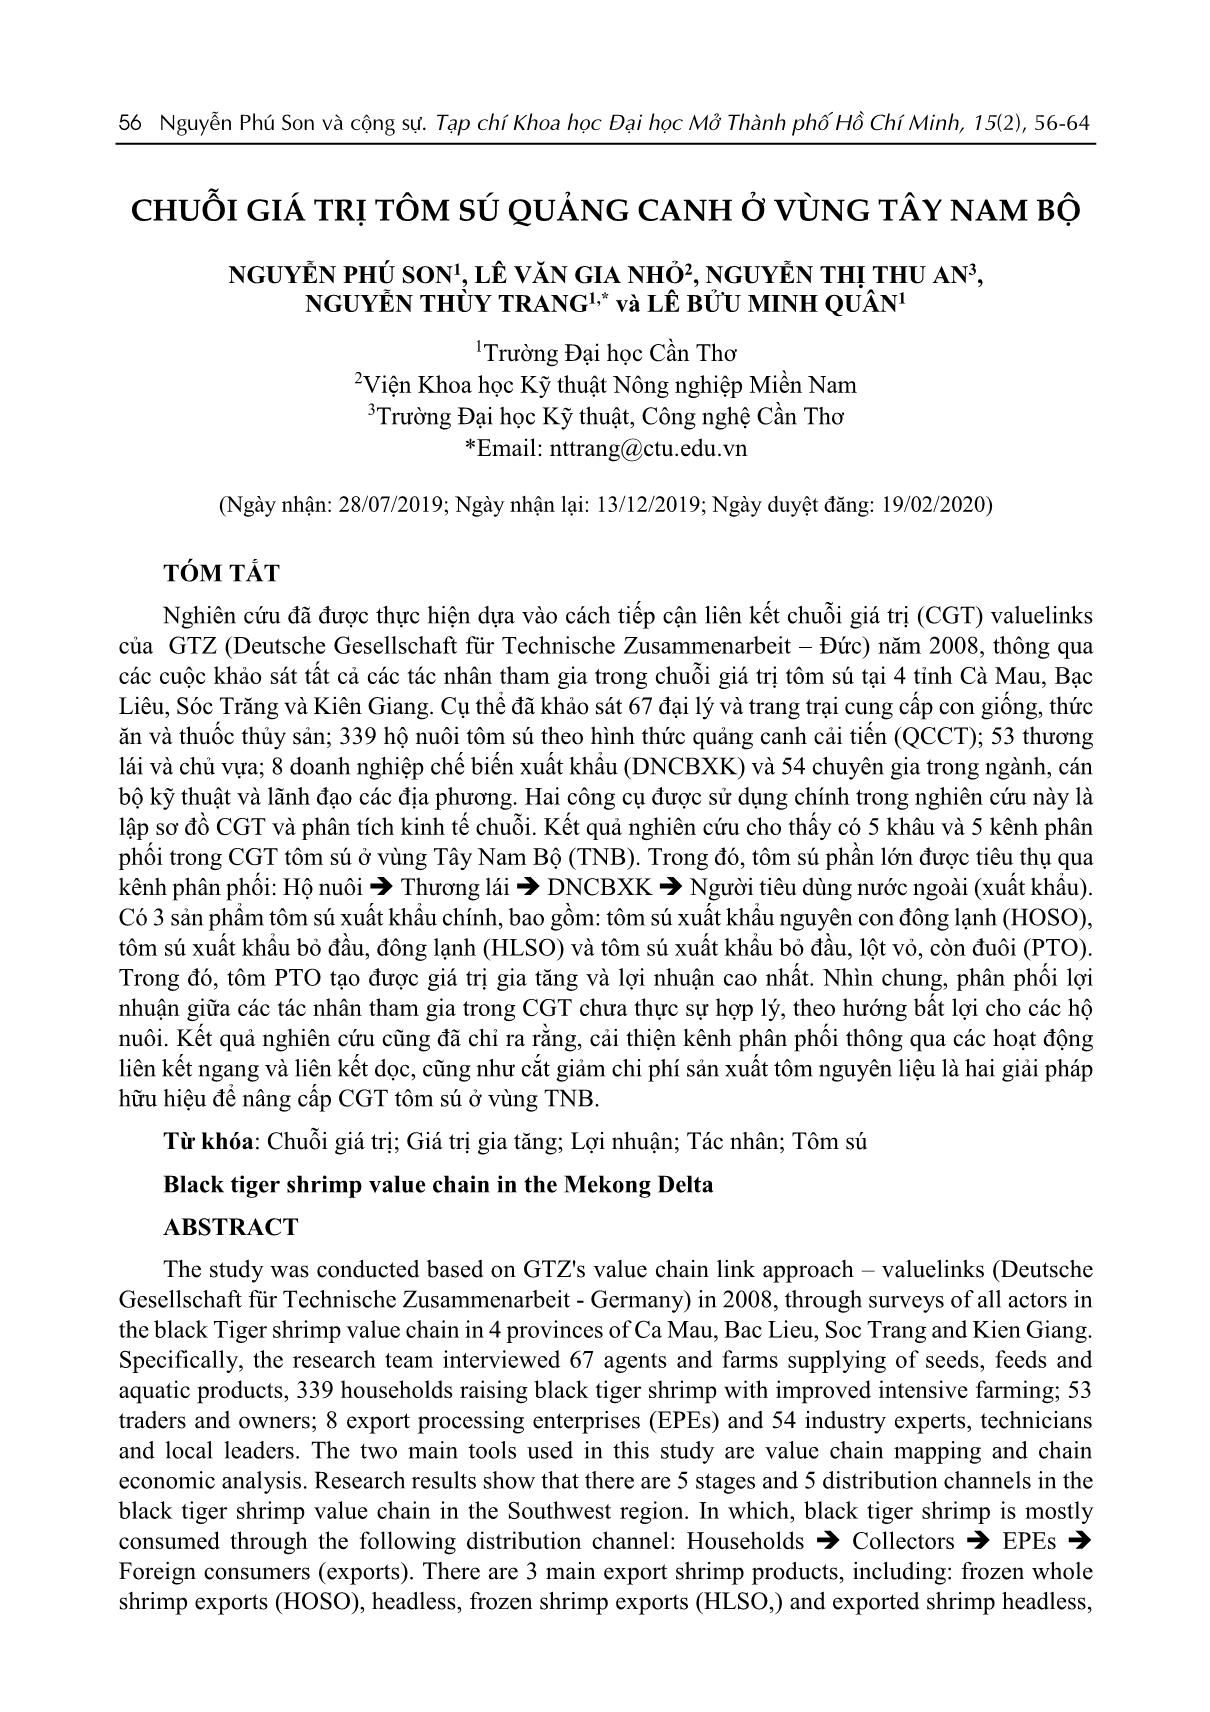 Chuỗi giá trị tôm sú Quảng Canh ở vùng Tây Nam Bộ trang 1